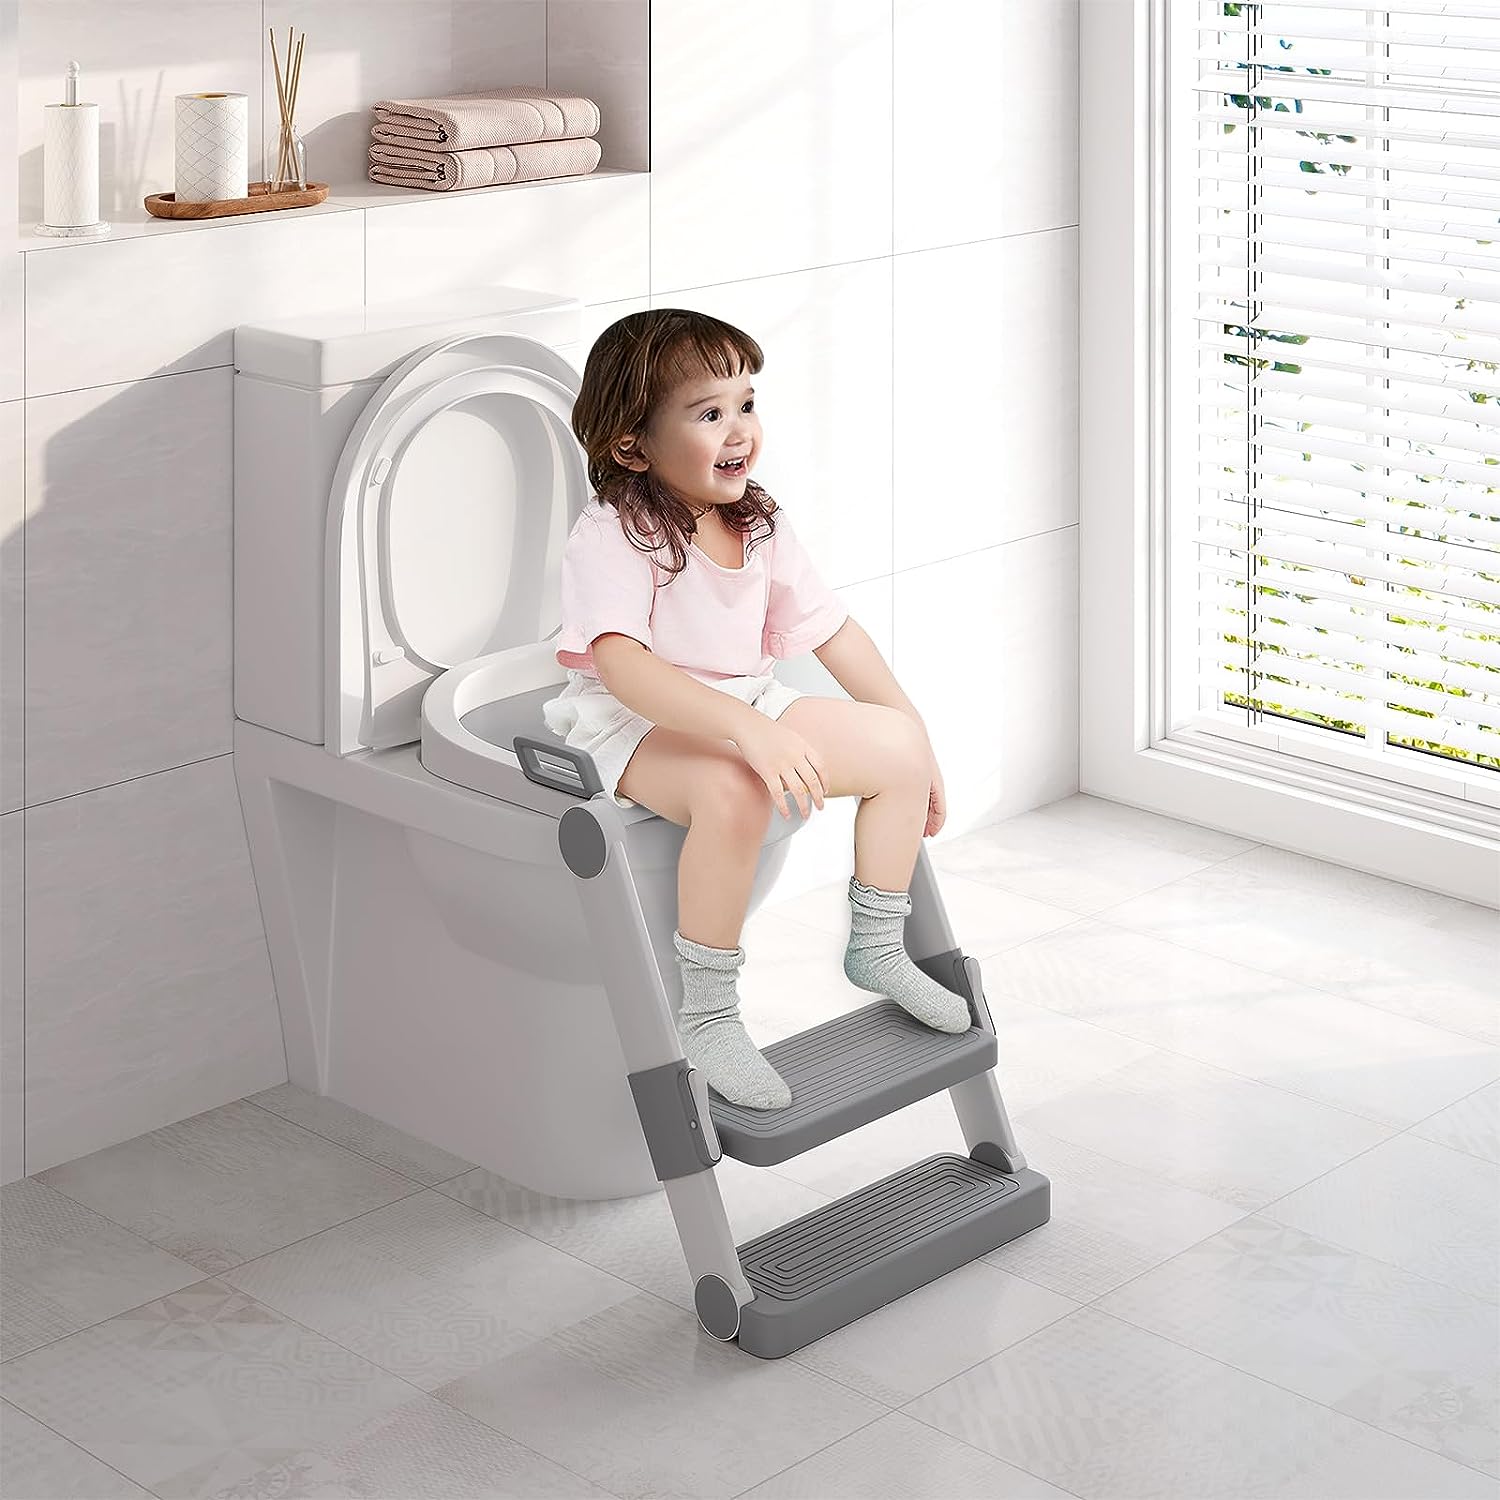 Cómo limpiar el potty y el asiento del inodoro para niños